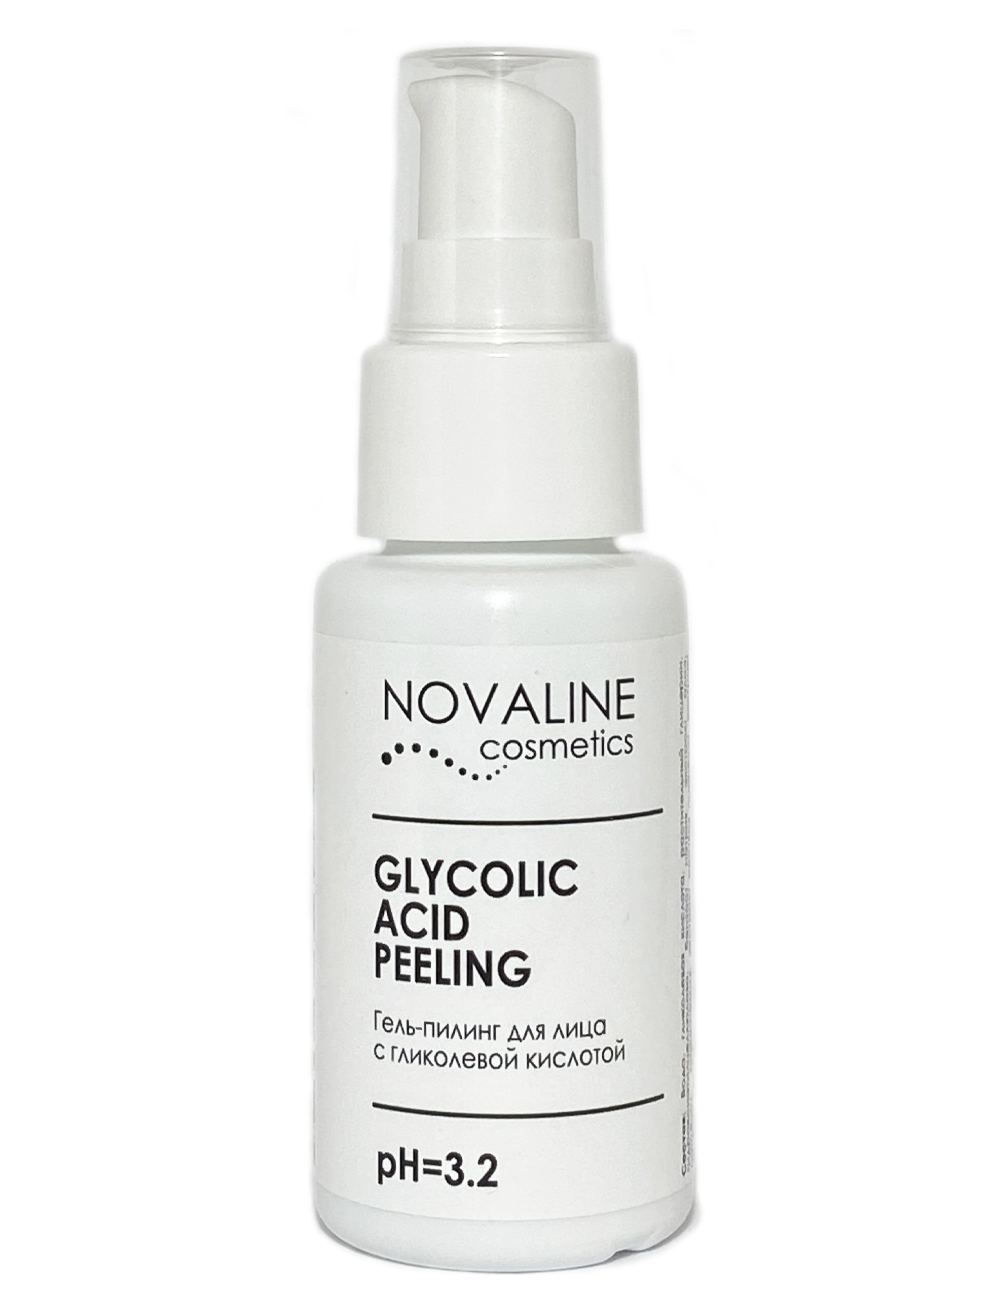 Novaline. Novaline Cosmetics пилинг гидрогелевый. Гликолевая кислота пилинг PH 3,5 концентрация 10%. Дерма косметика девушка. Гликолевая кислота от пигментных пятен цена отзывы.